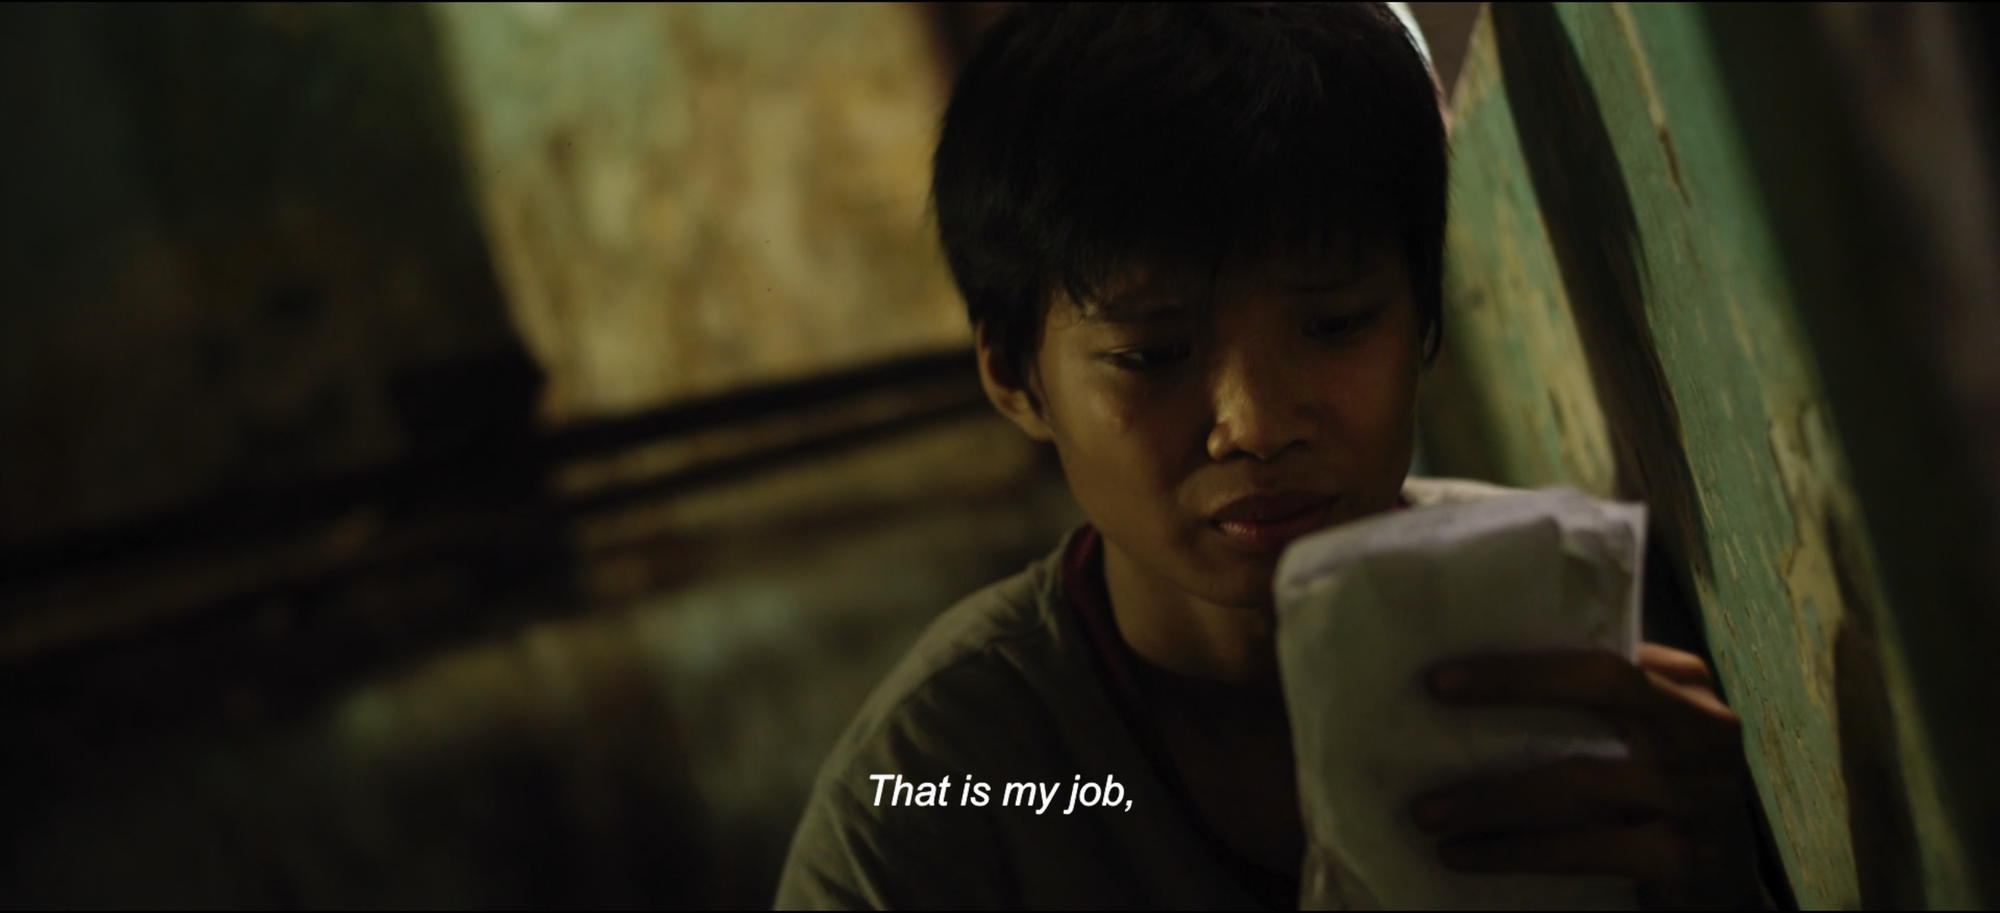 Trailer kịch tính của “Ròm” nhận nhiều lời khen - Ảnh 2.